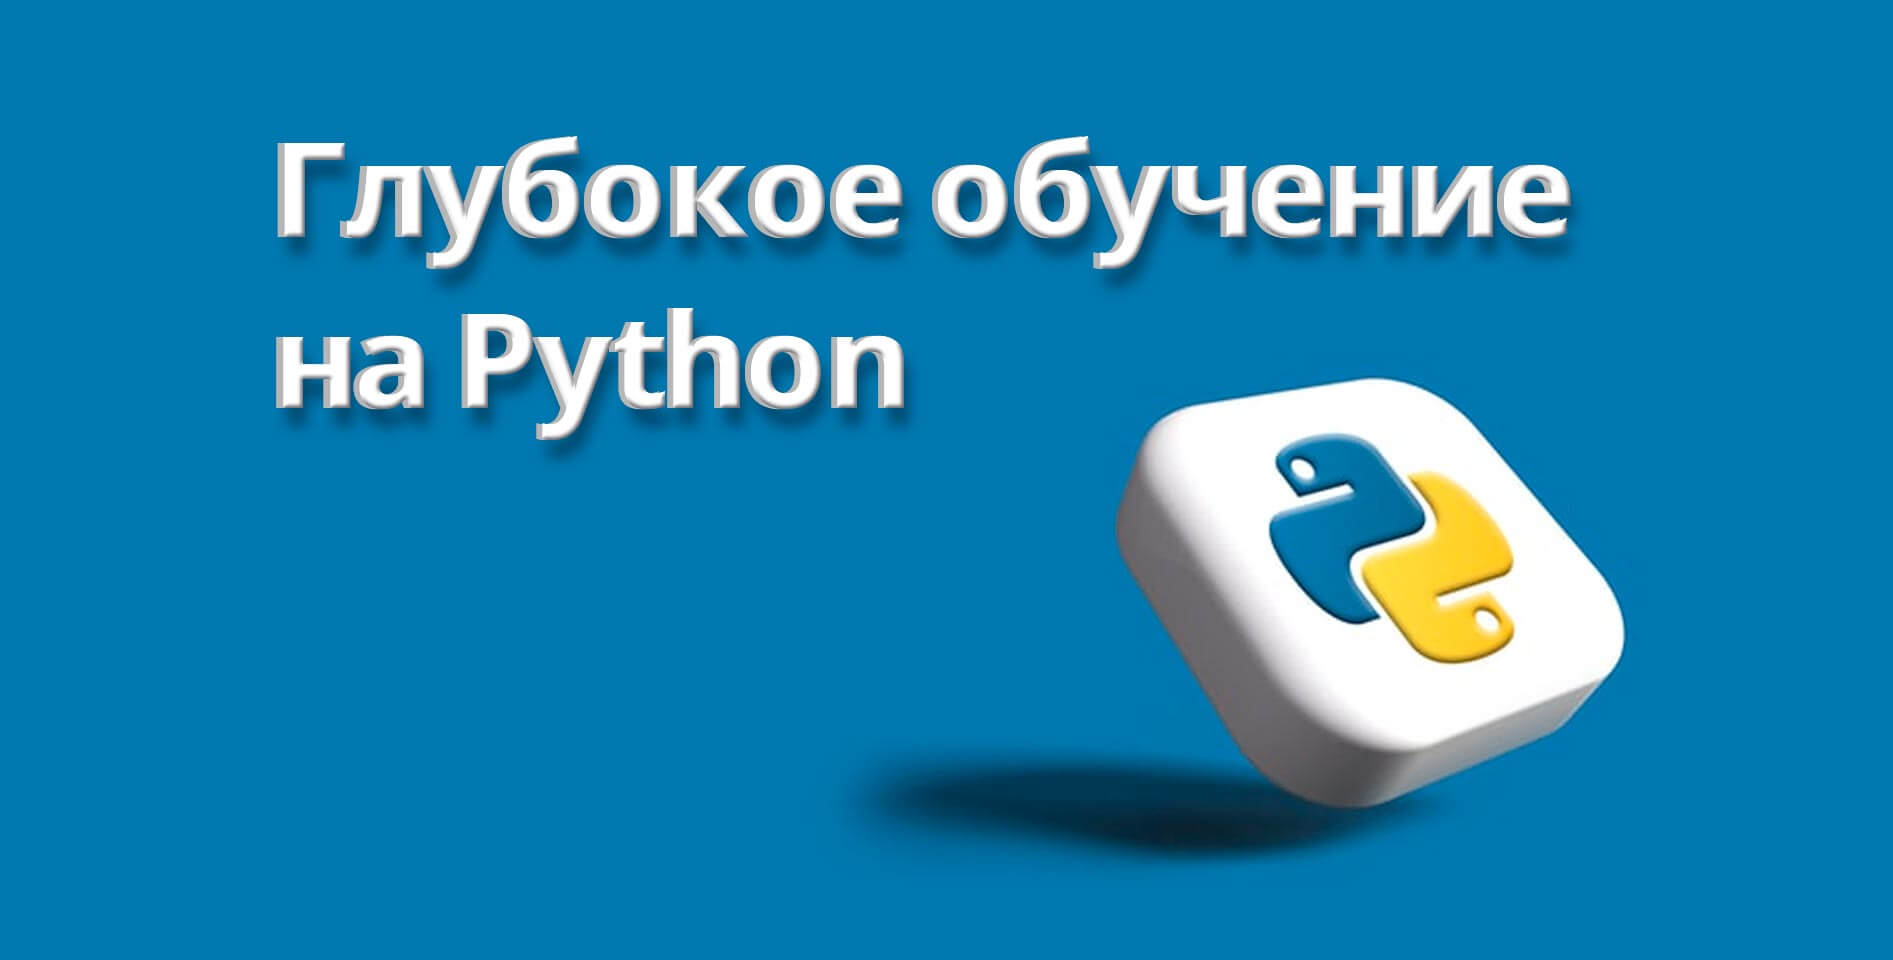 Андрей Созыкин — Глубокое обучение на Python